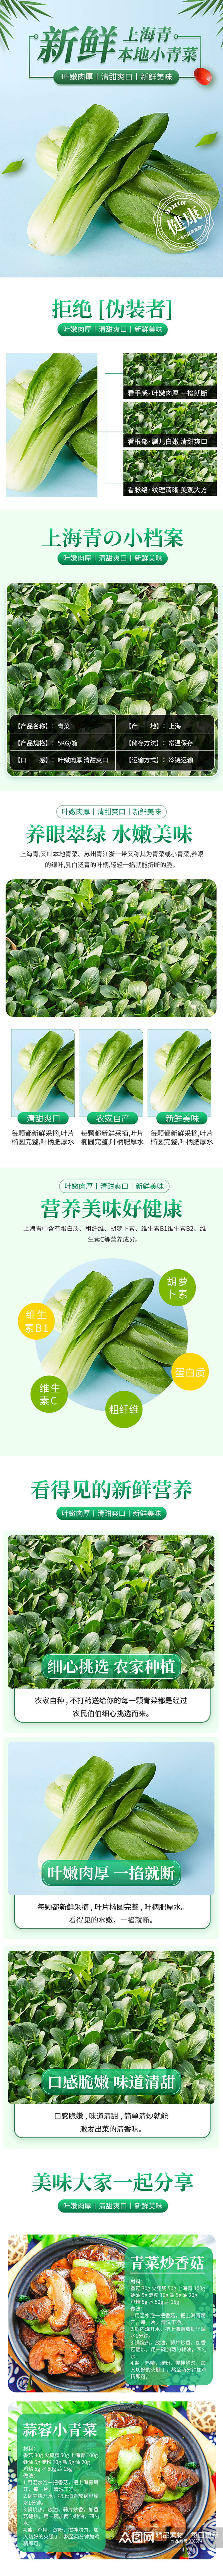 小清新风格上海青青菜详情页素材